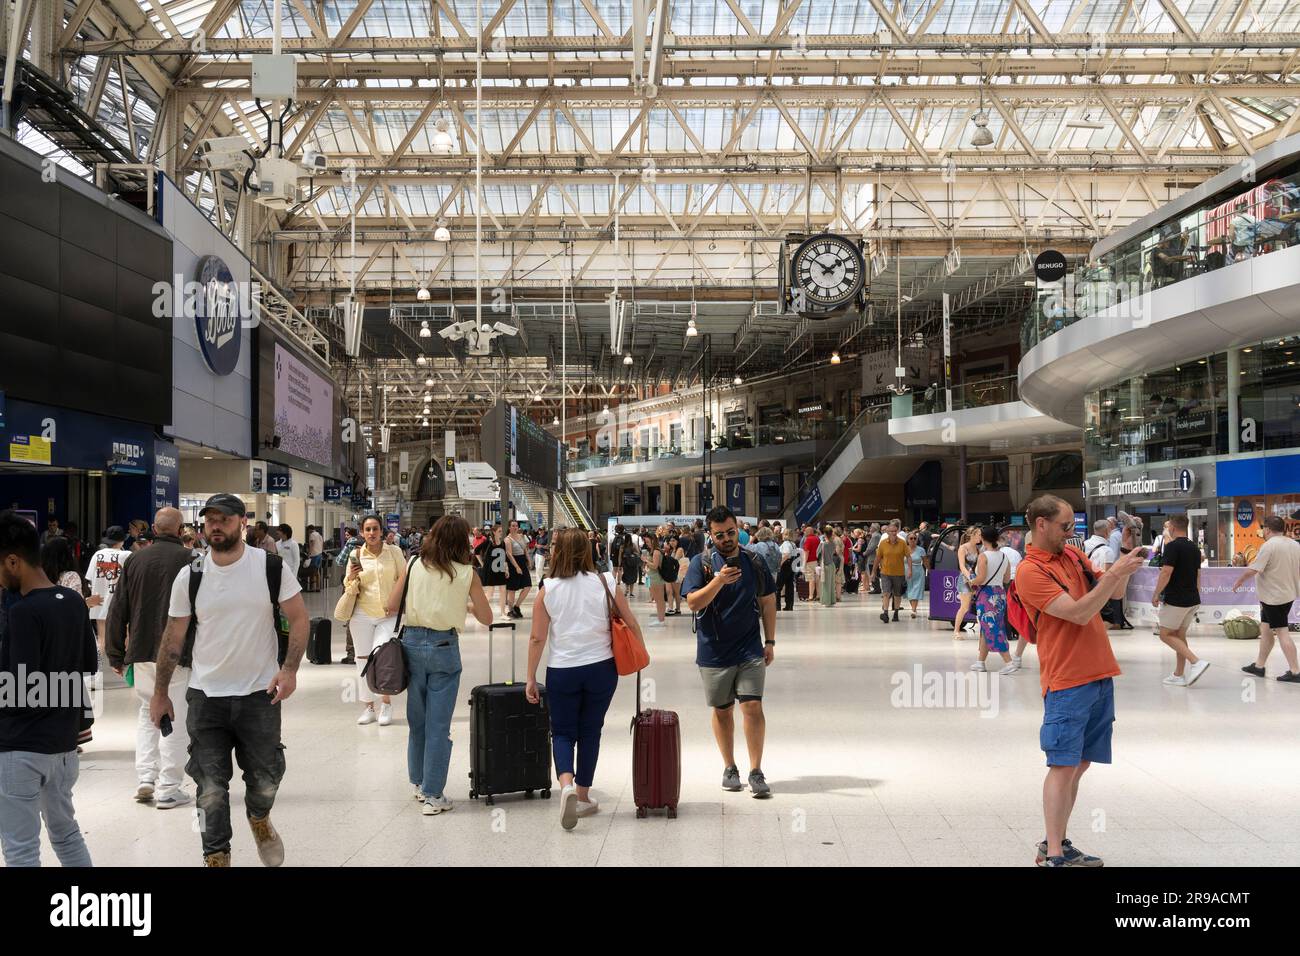 Les gens qui marchent à travers la gare de Londres Waterloo concourse et à la recherche des horaires de train. ROYAUME-UNI. Concept: Prix des billets, transport ferroviaire, navetteurs ferroviaires Banque D'Images